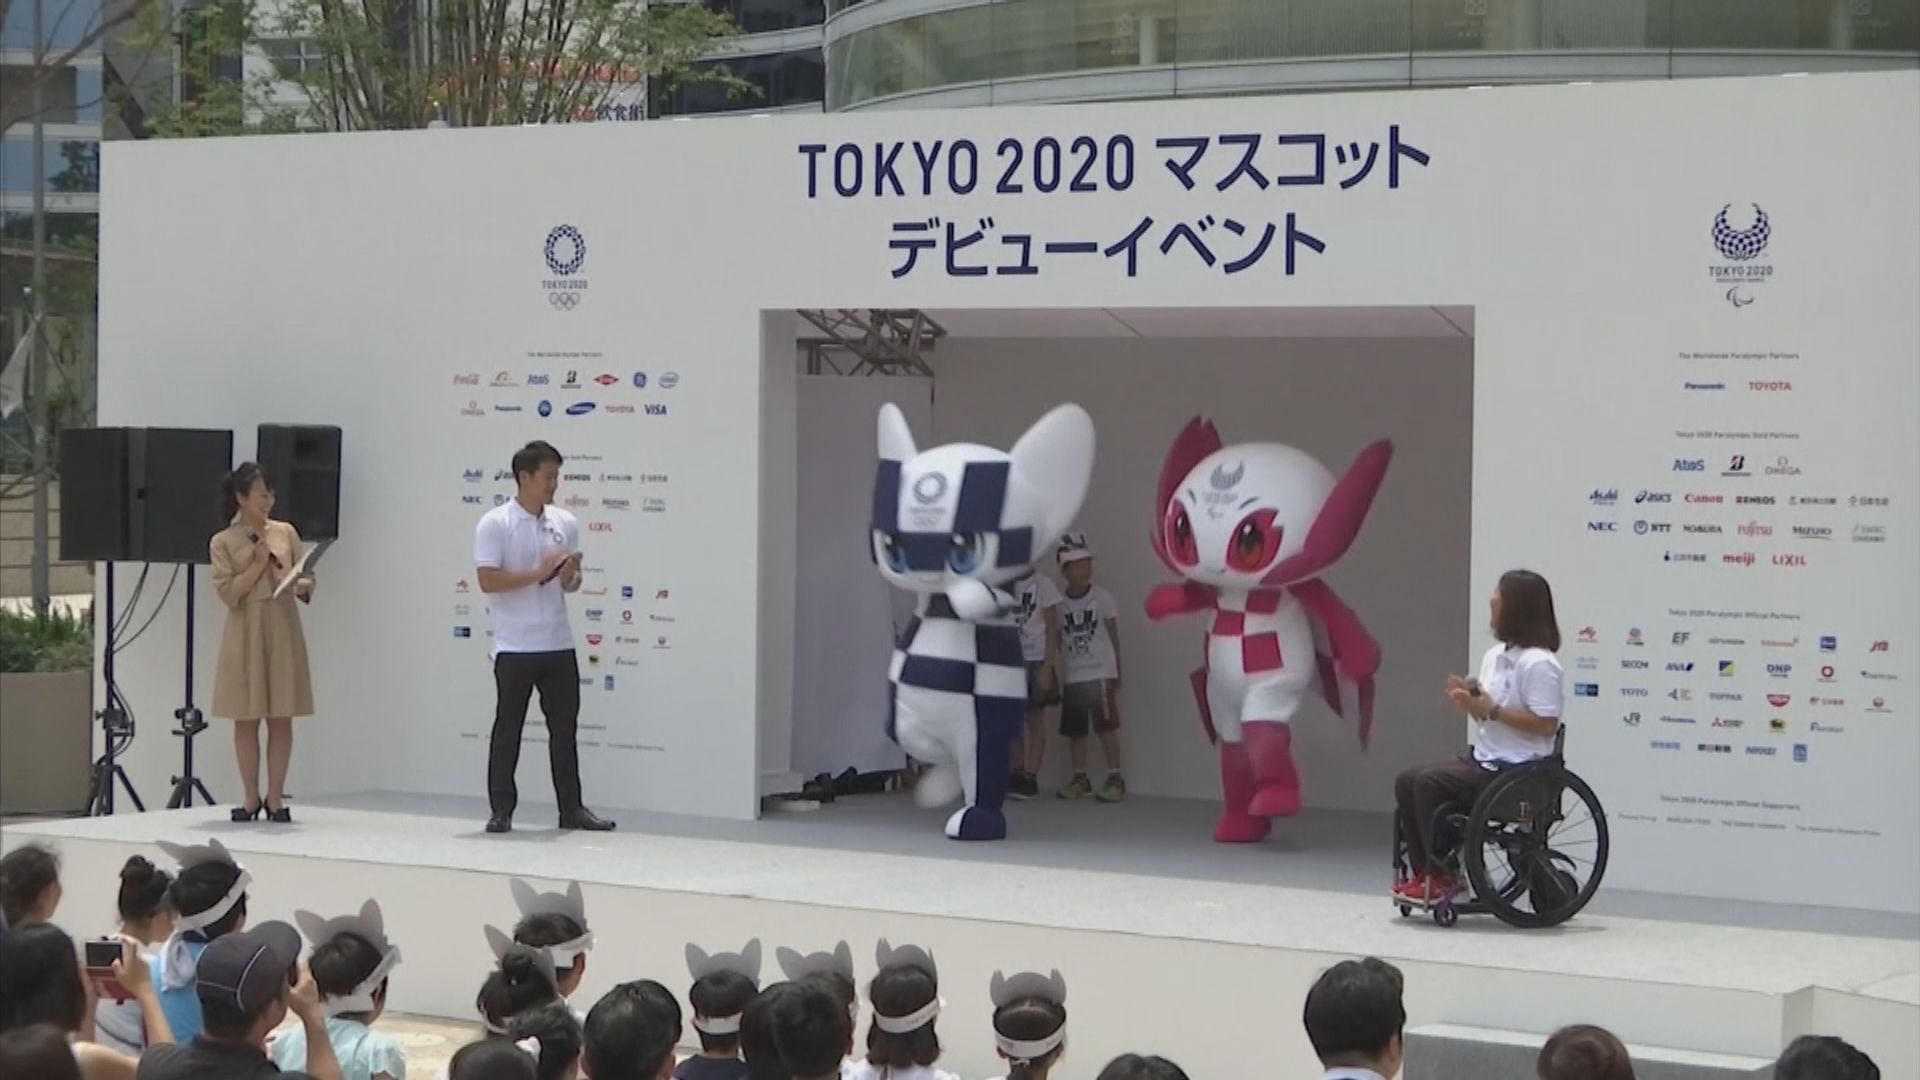 【環球薈報】日本疫情反彈逾八成東京奧運義工感不安